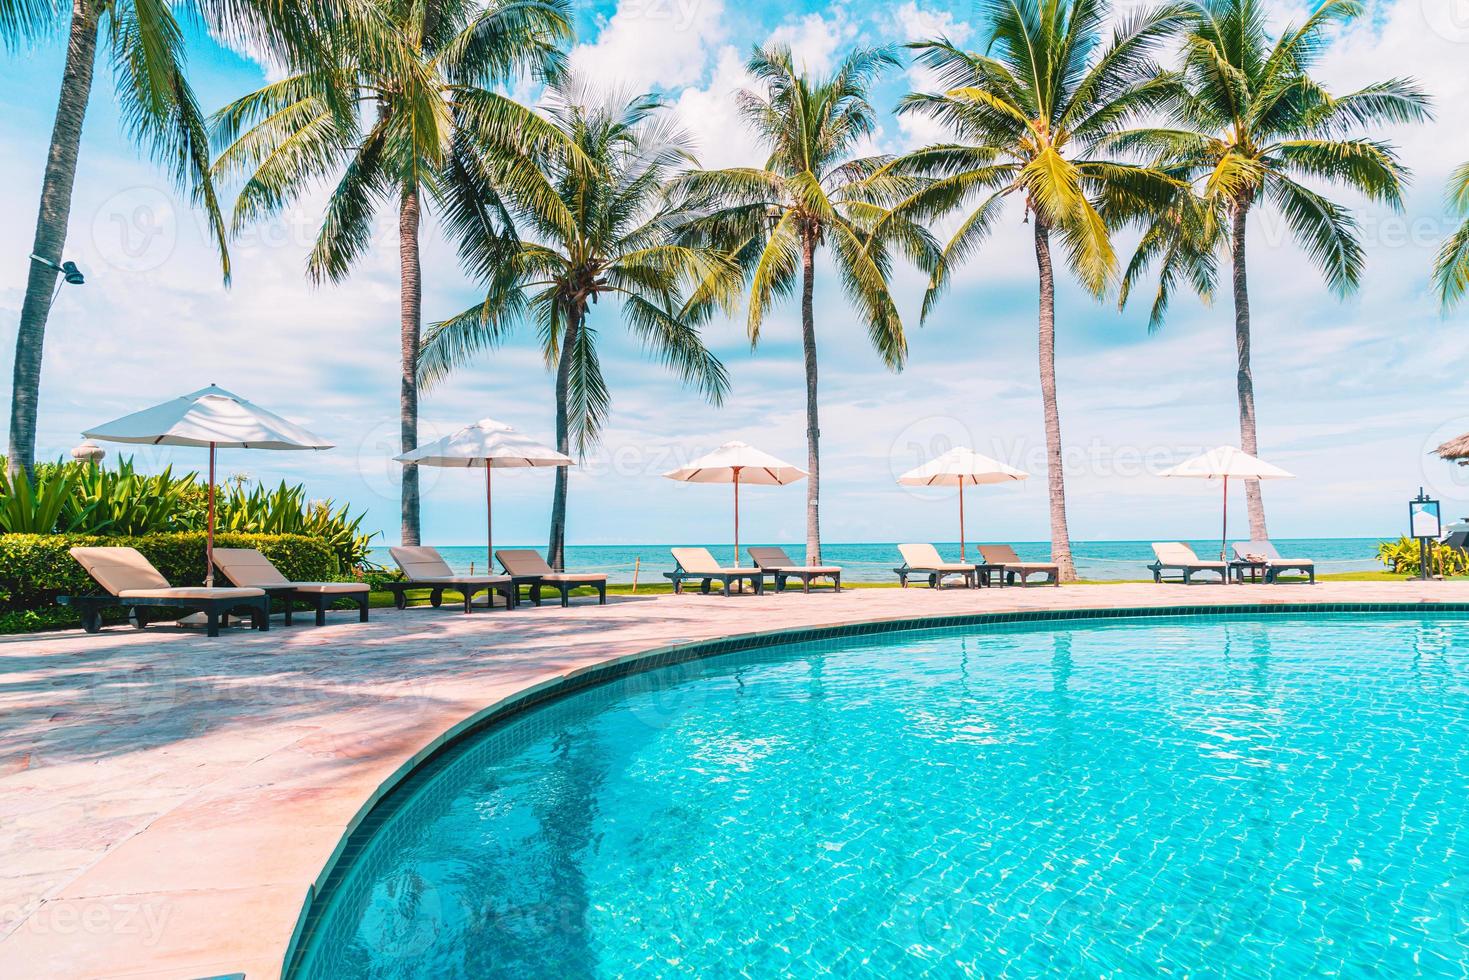 bela praia tropical e mar com guarda-sol e cadeira ao redor da piscina em hotel resort foto